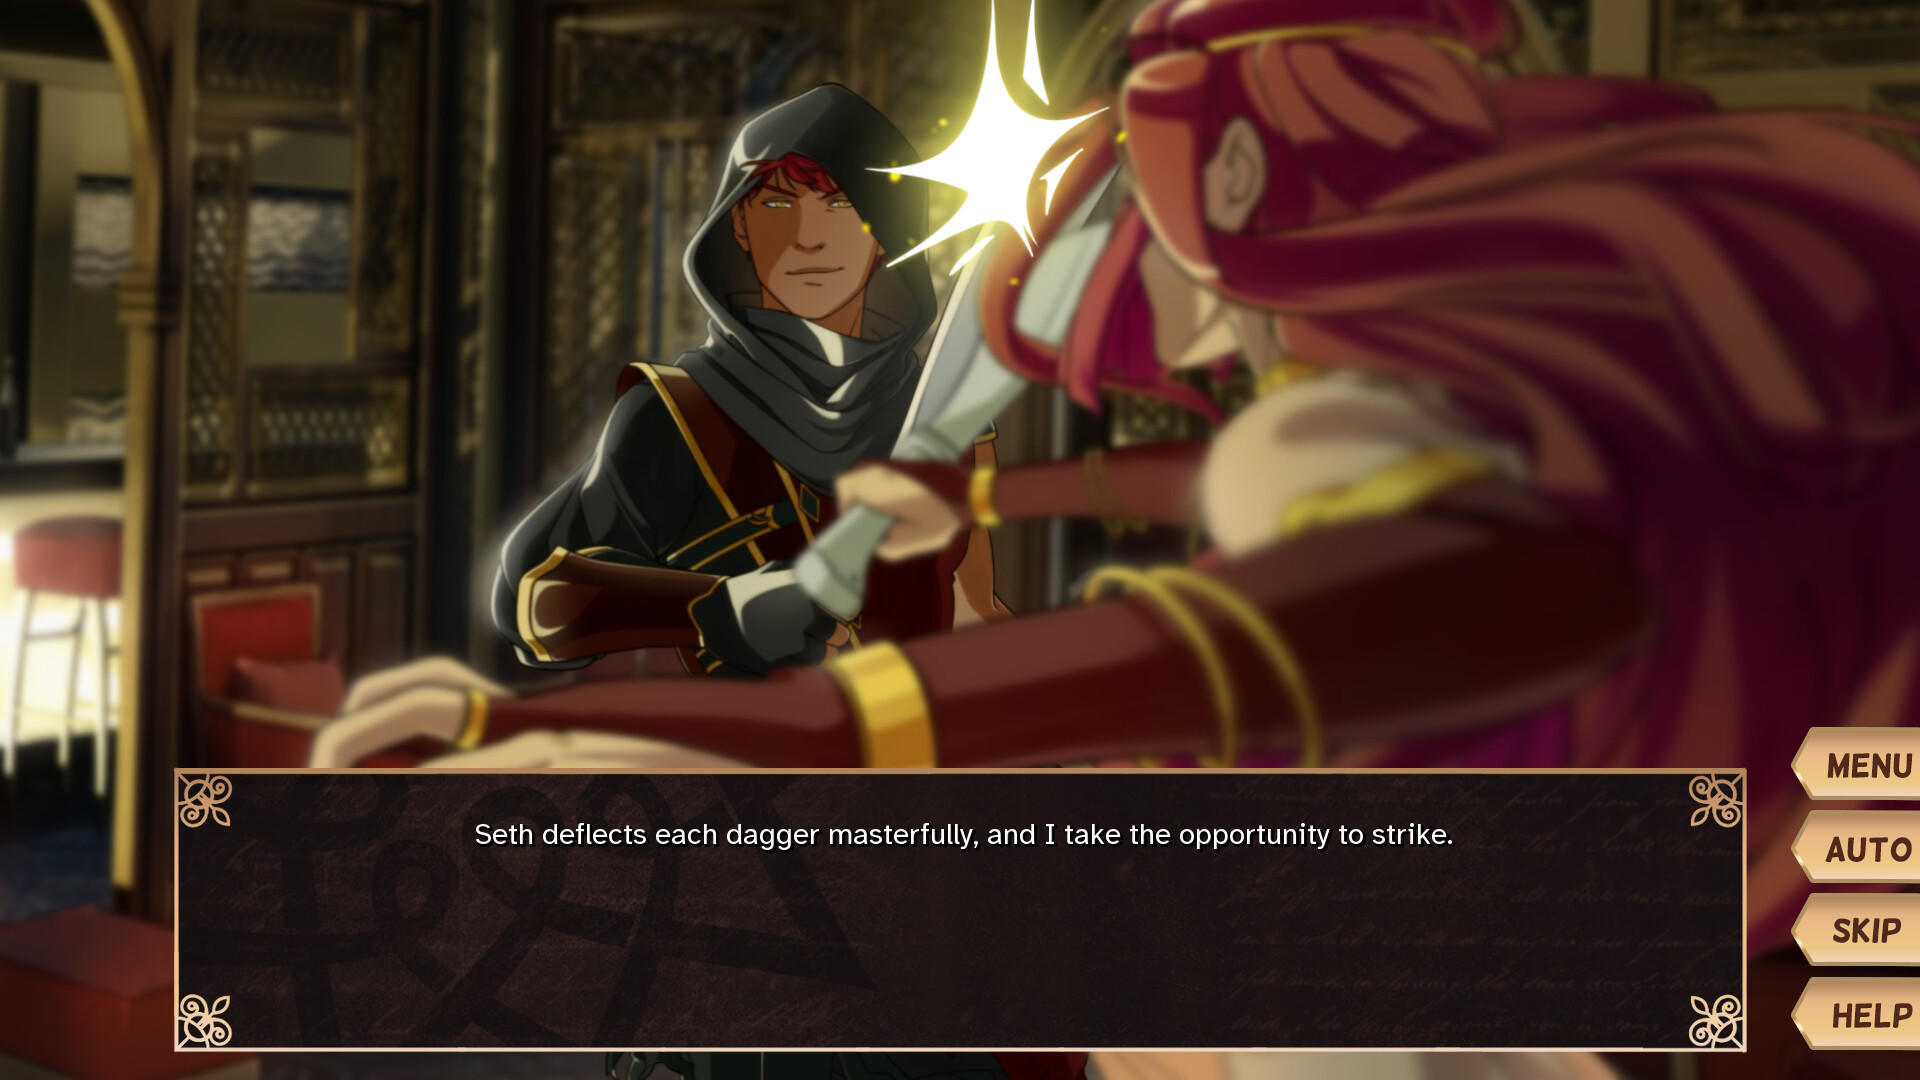 Garden of Seif: Chronicles of an Assassin 게임 스크린 샷